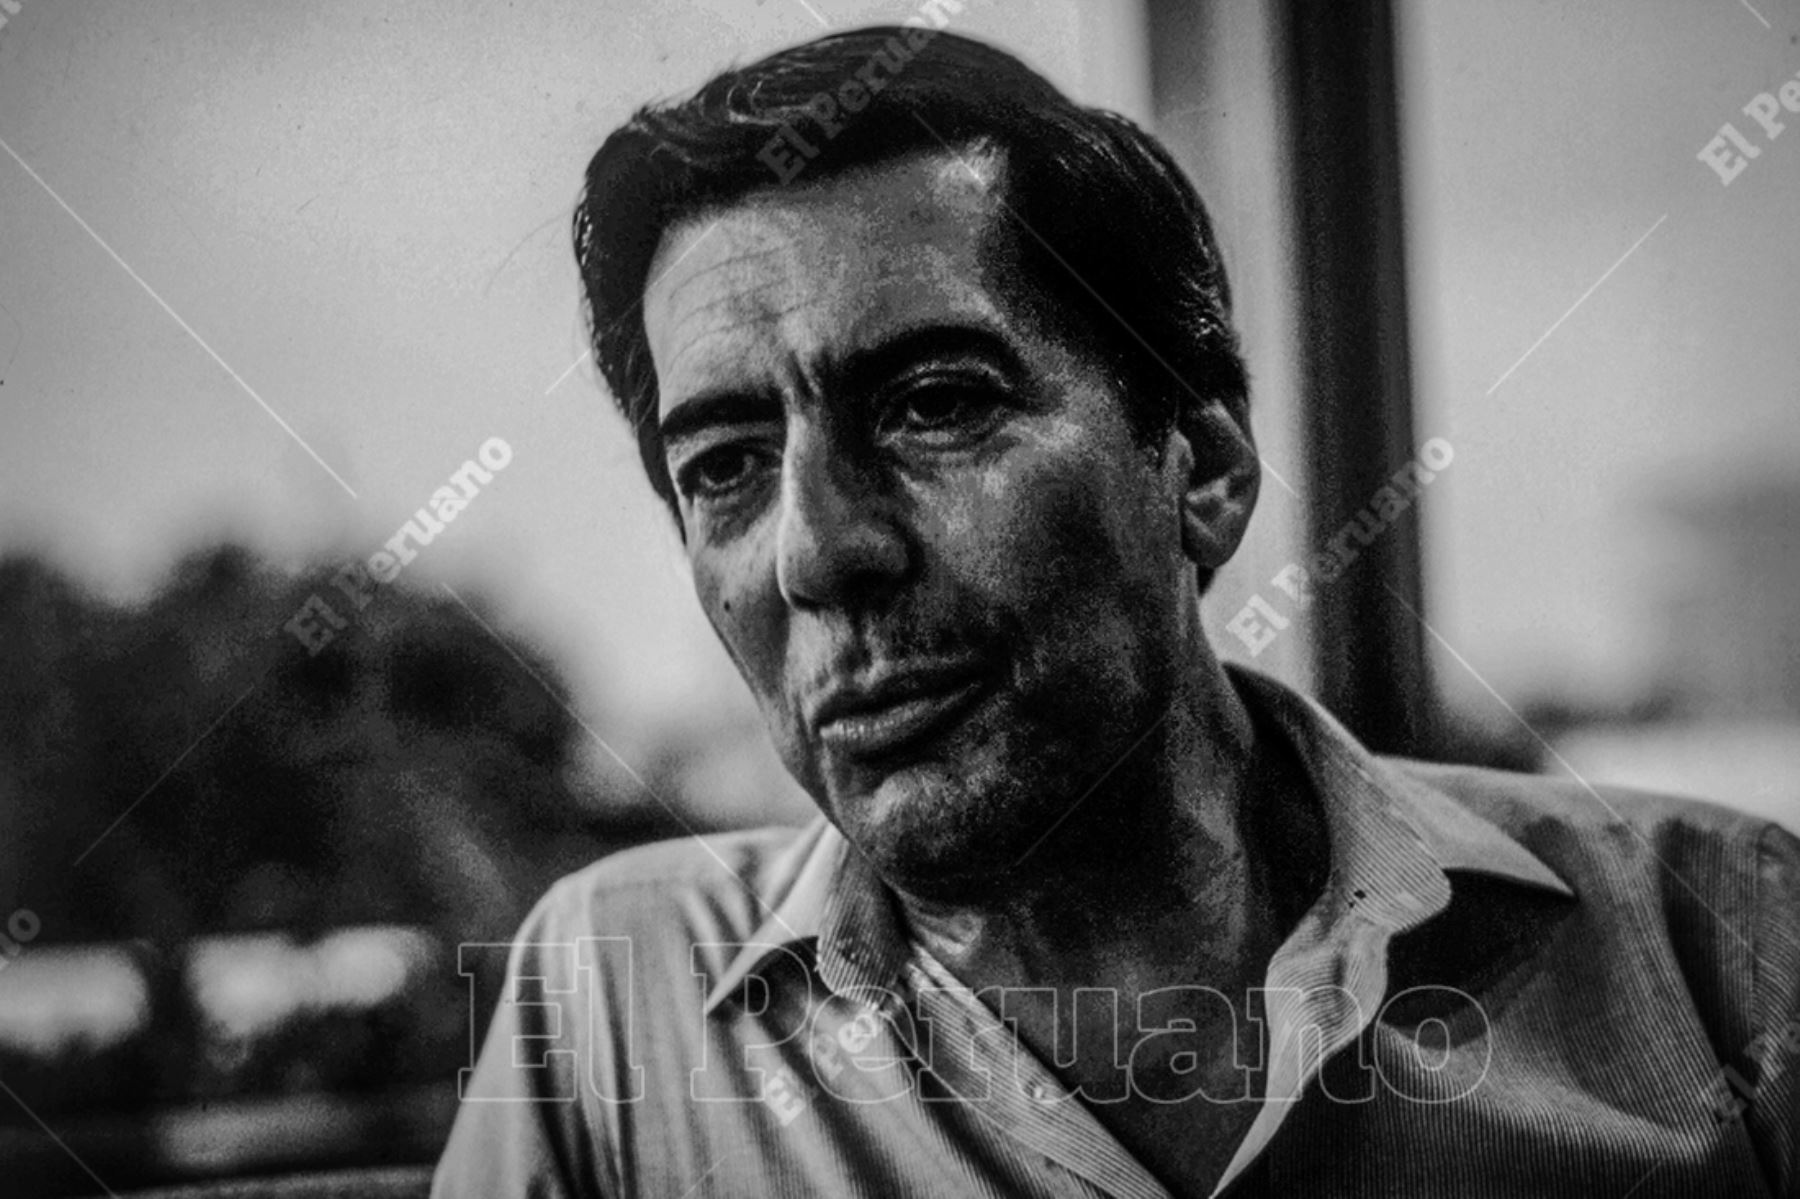 Lima - Década 1980 / Entrevista al laureado escritor Mario Vargas Llosa, autor de La guerra del fin del mundo. Foto: Archivo Histórico de El Peruano